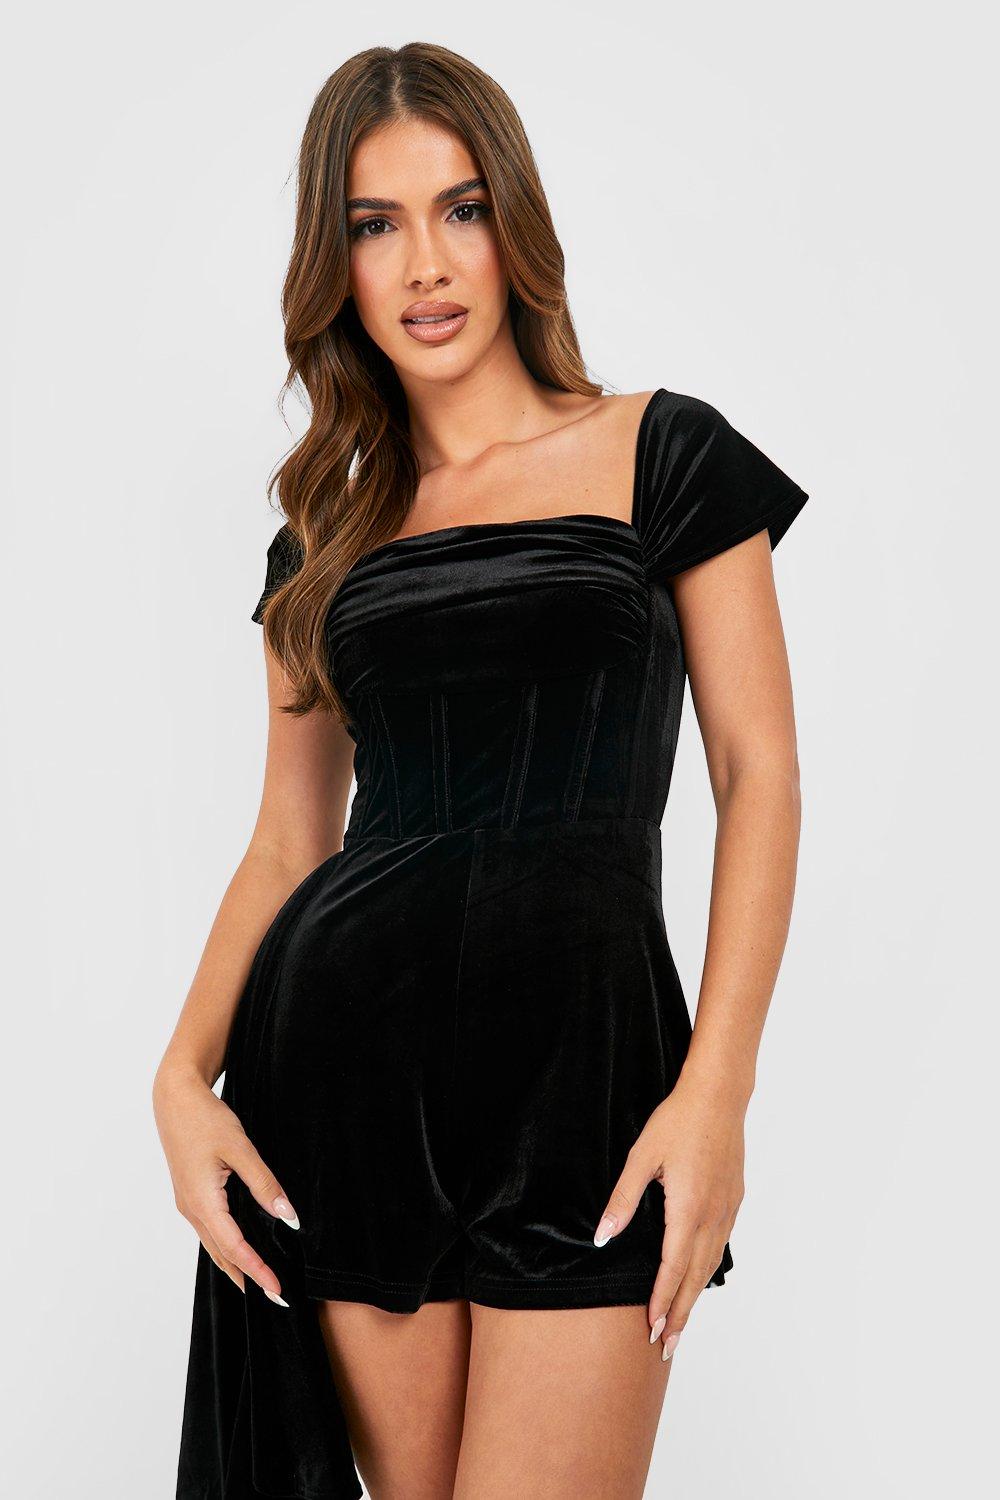 https://media.boohoo.com/i/boohoo/gzz29827_black_xl_3/female-black-velvet-off-the-shoulder-corset-romper